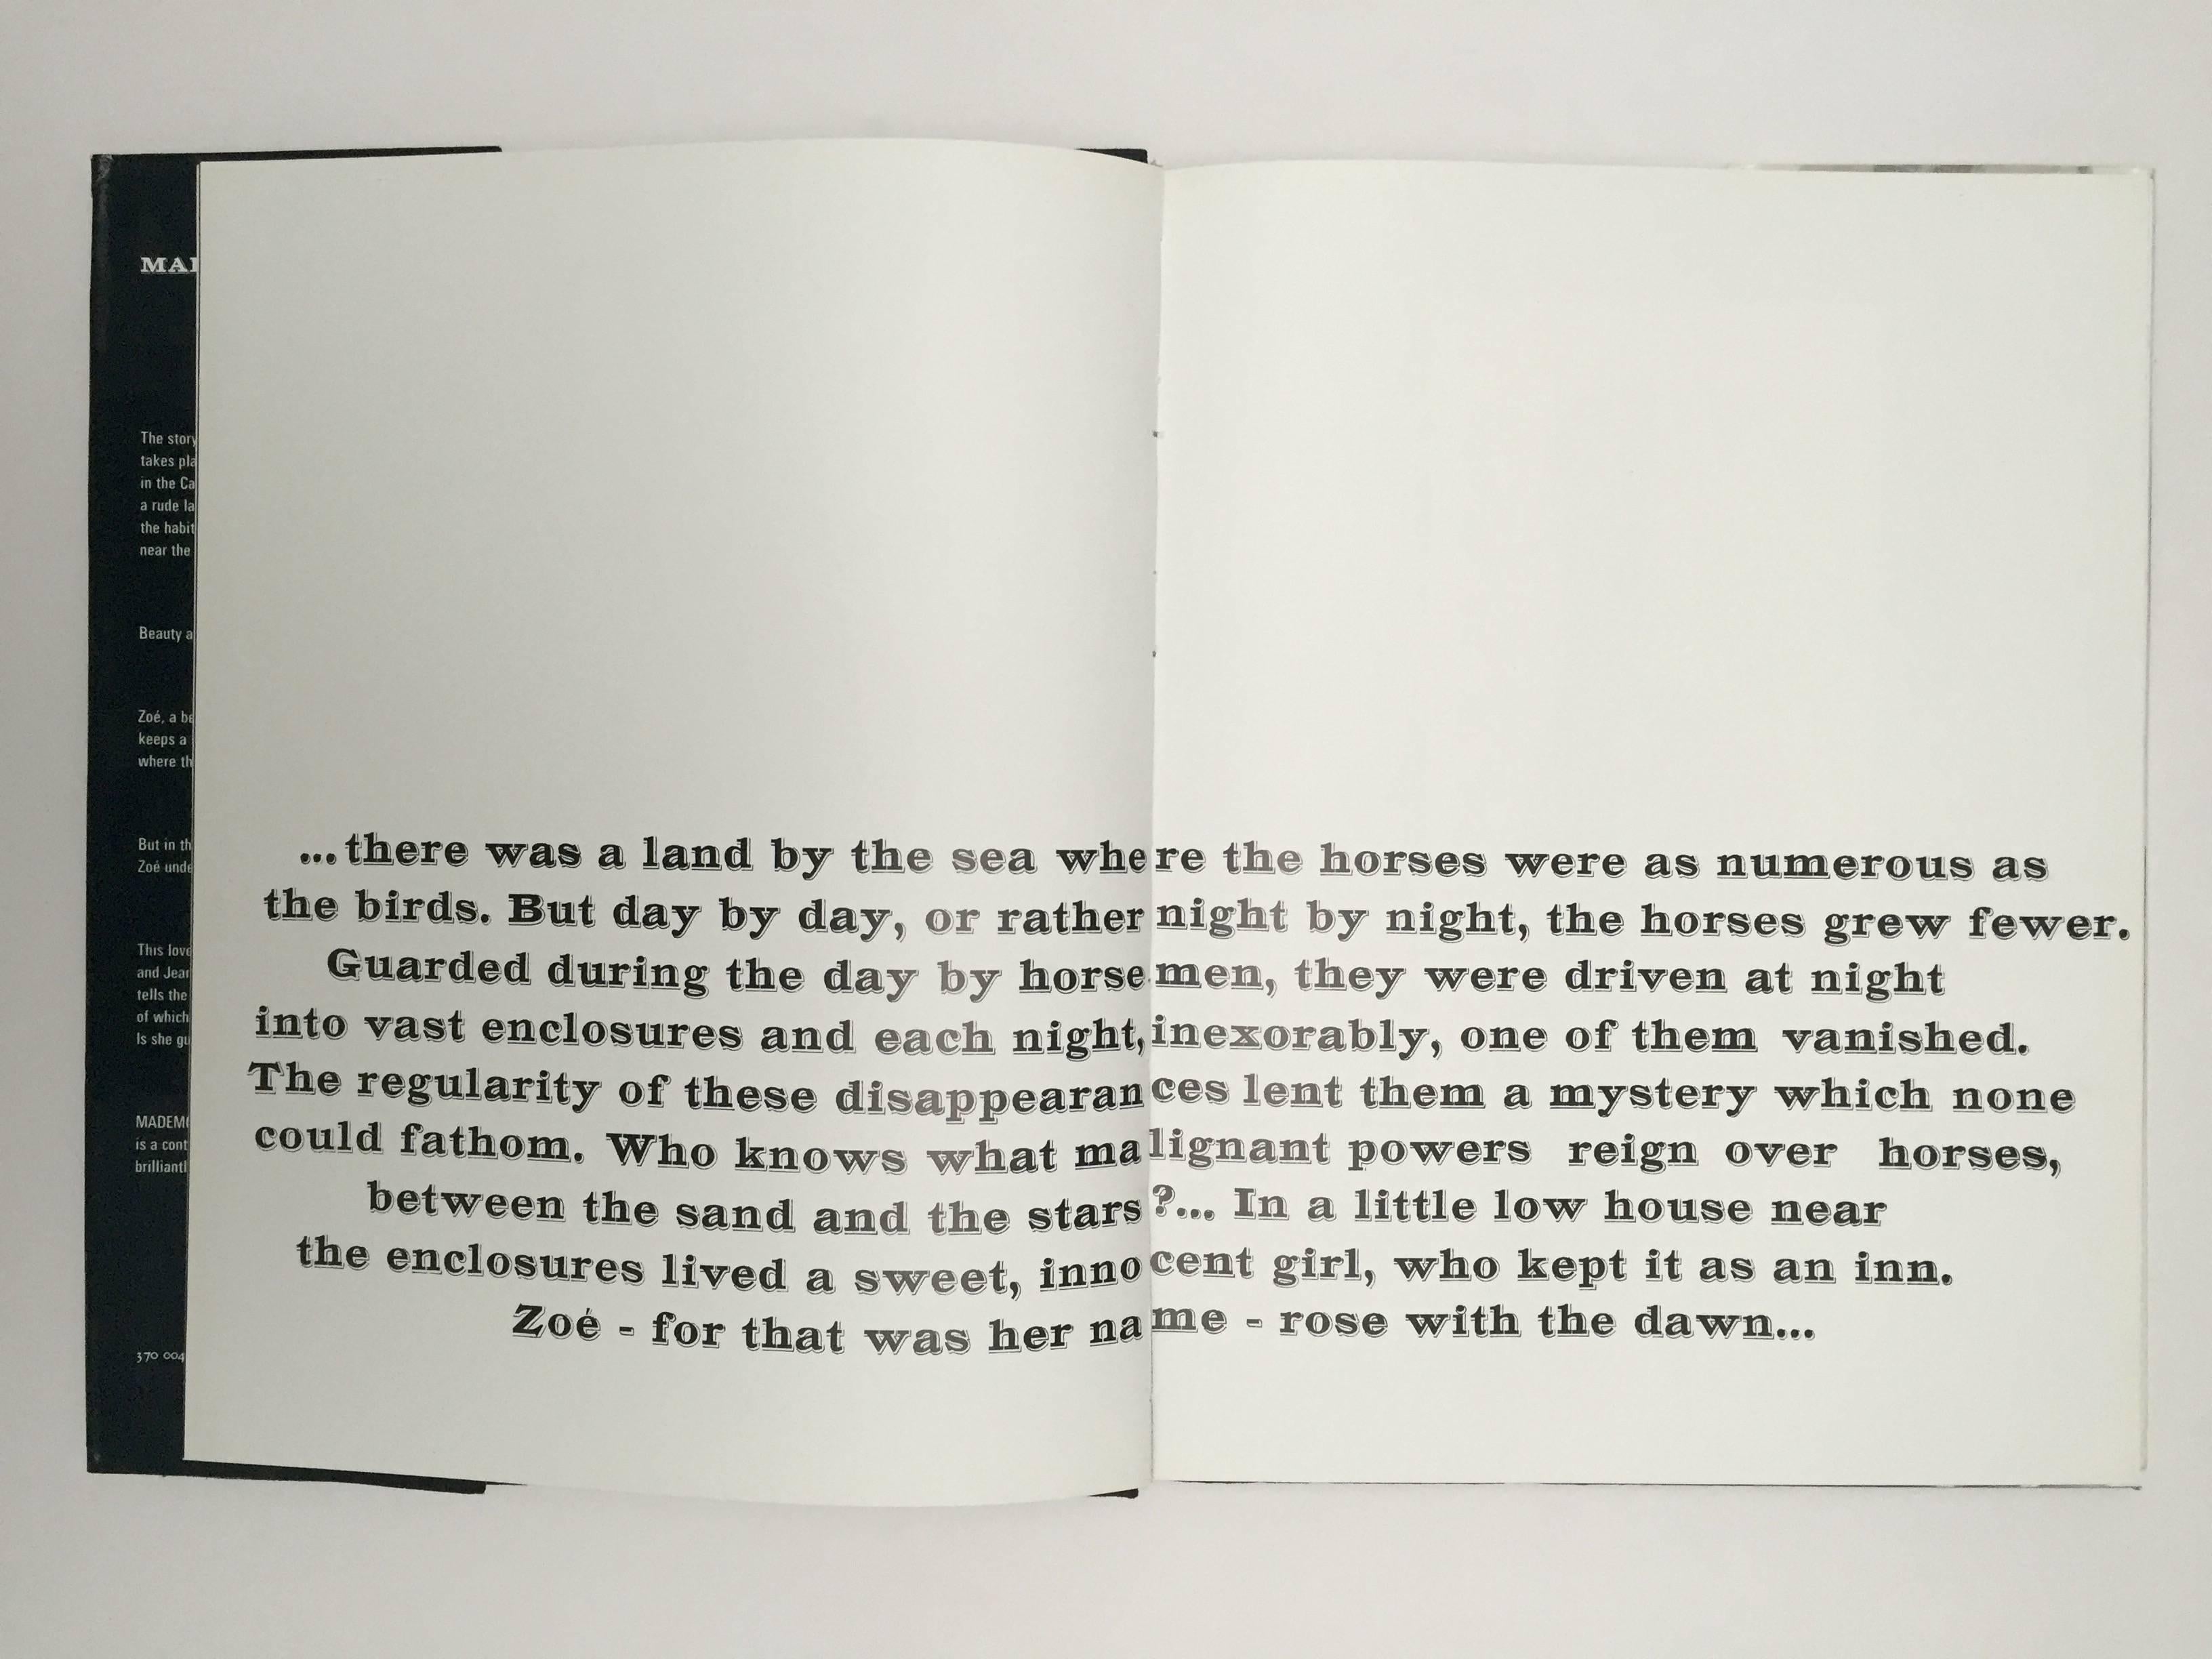 Première édition, The Bodley Head, 1968.

L'un des livres de photos les plus importants des années 1960. Un récit illustré qui suit une jeune fille nommée Zoe qui tient une auberge fréquentée par de mystérieux 